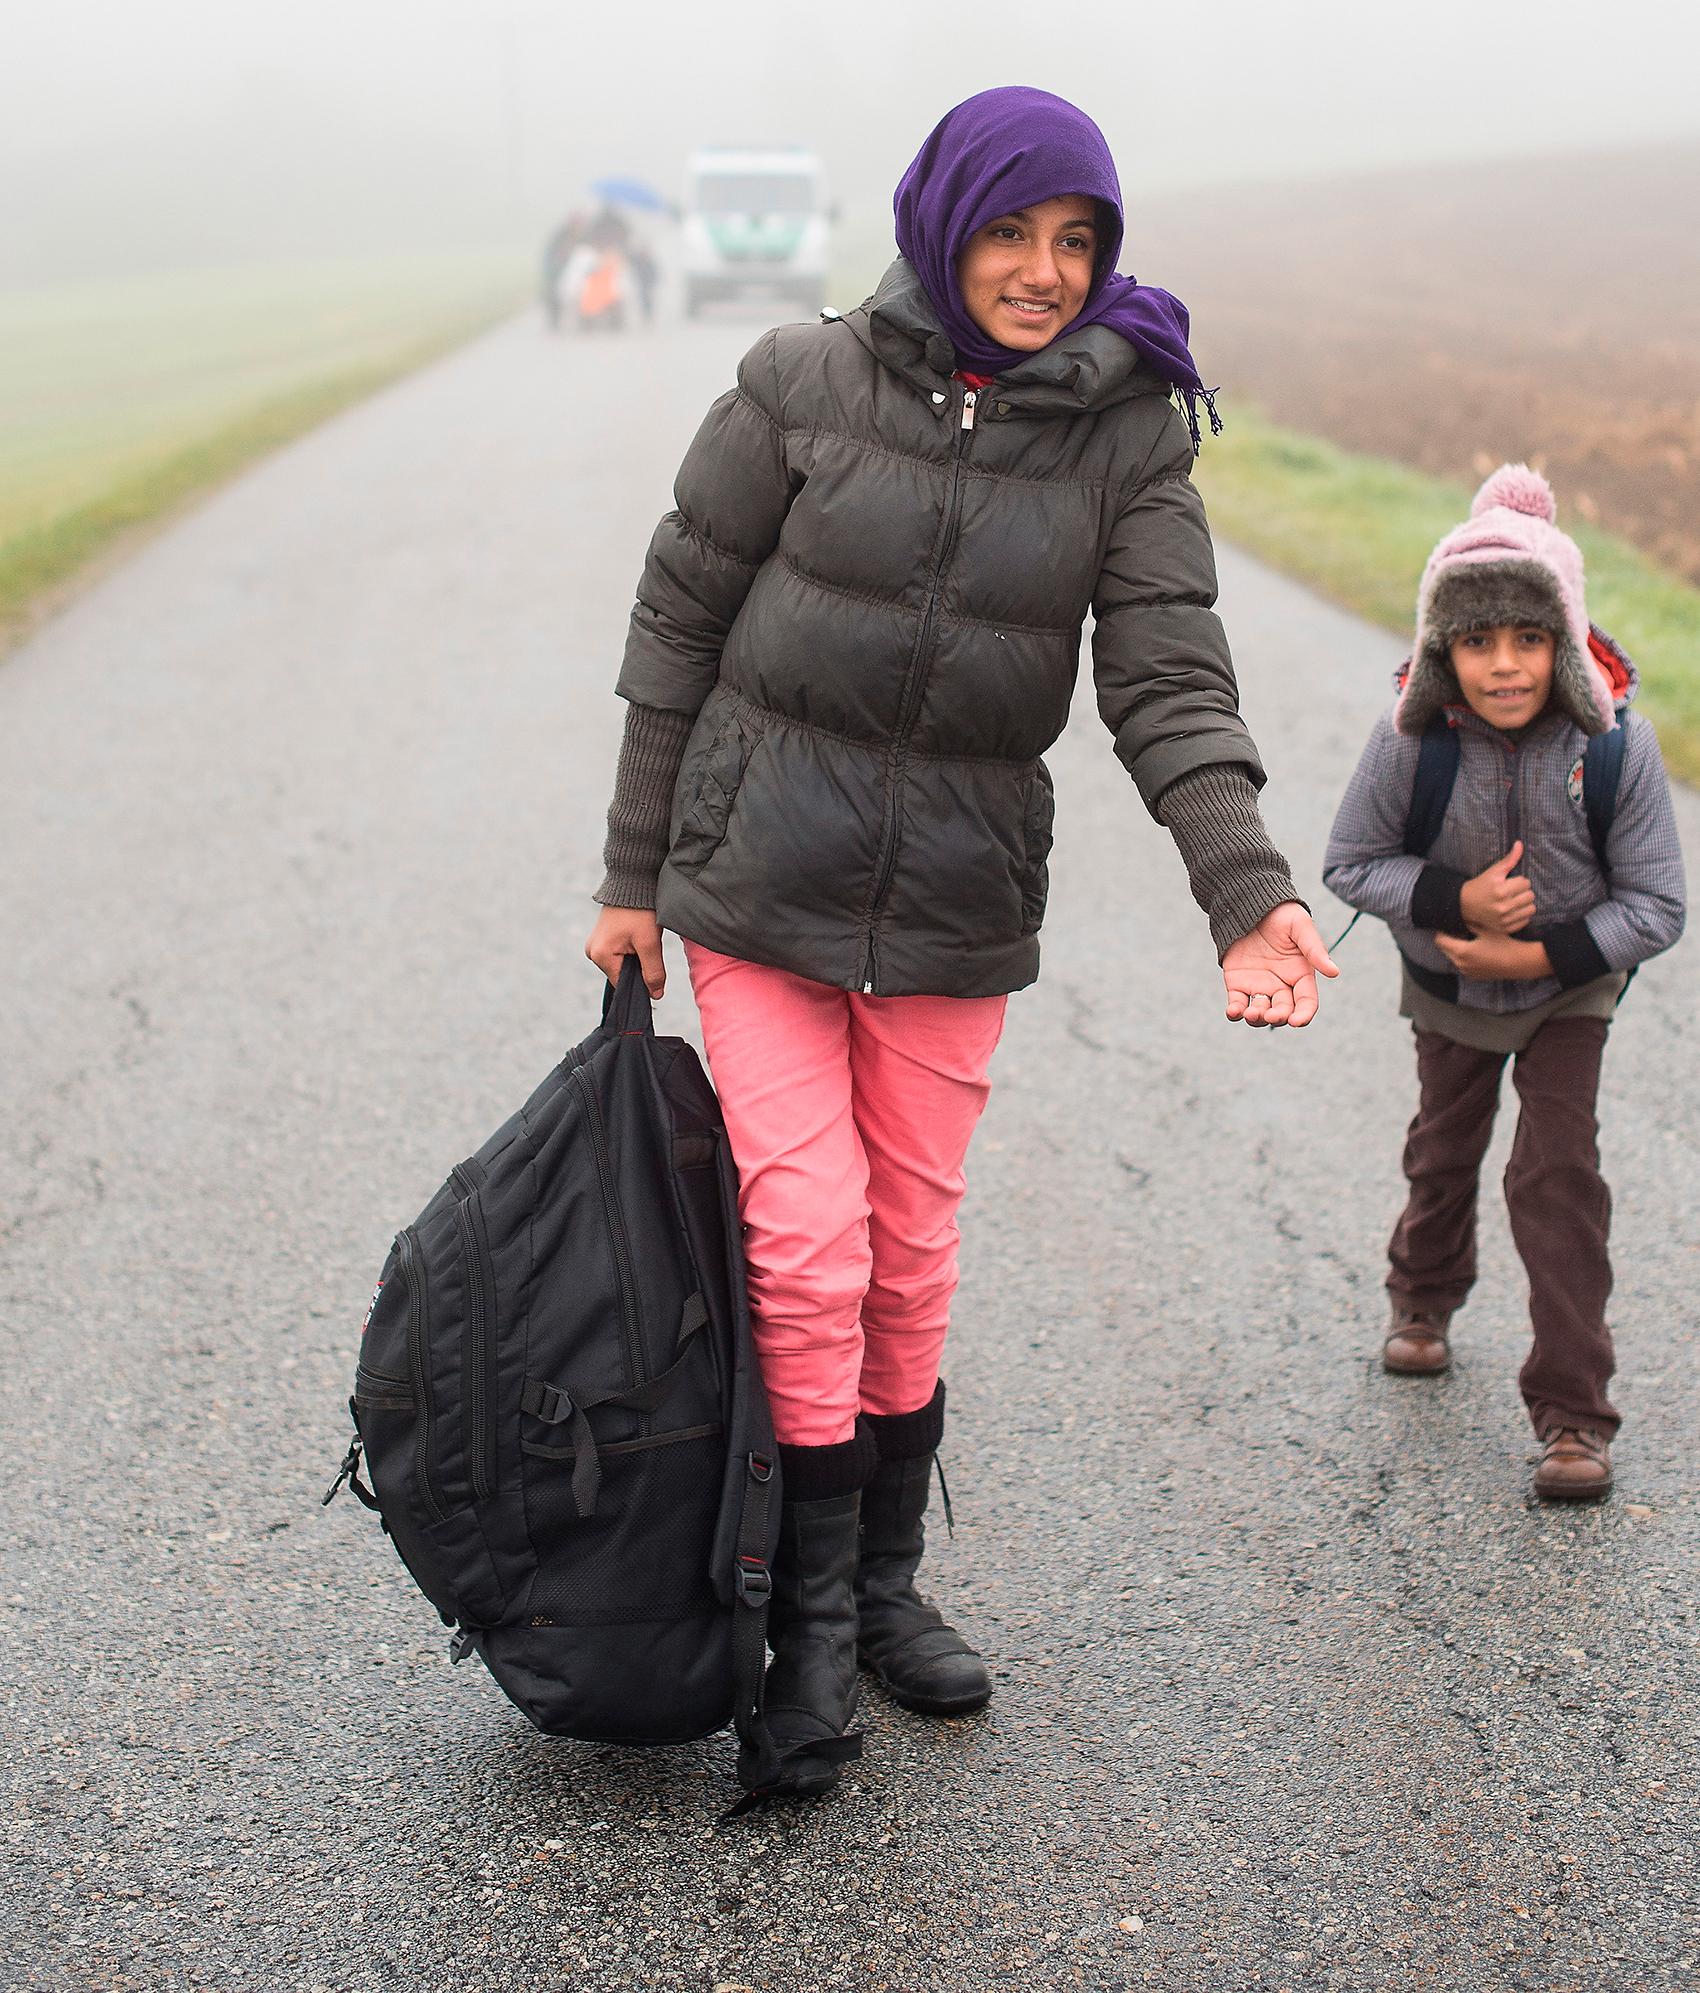 VAD BÖR SVERIGE GÖRA? Vi bör bygga kapacitet för att ta emot upp till 100 000 asylsökande per år under de närmaste åren – och system för att se till att de som får stanna har bästa möjliga förutsättningar att komma in i det svenska samhället. Bilden visar flyktingar i Kollerschlag i Österrike, på väg mot Tyskland.